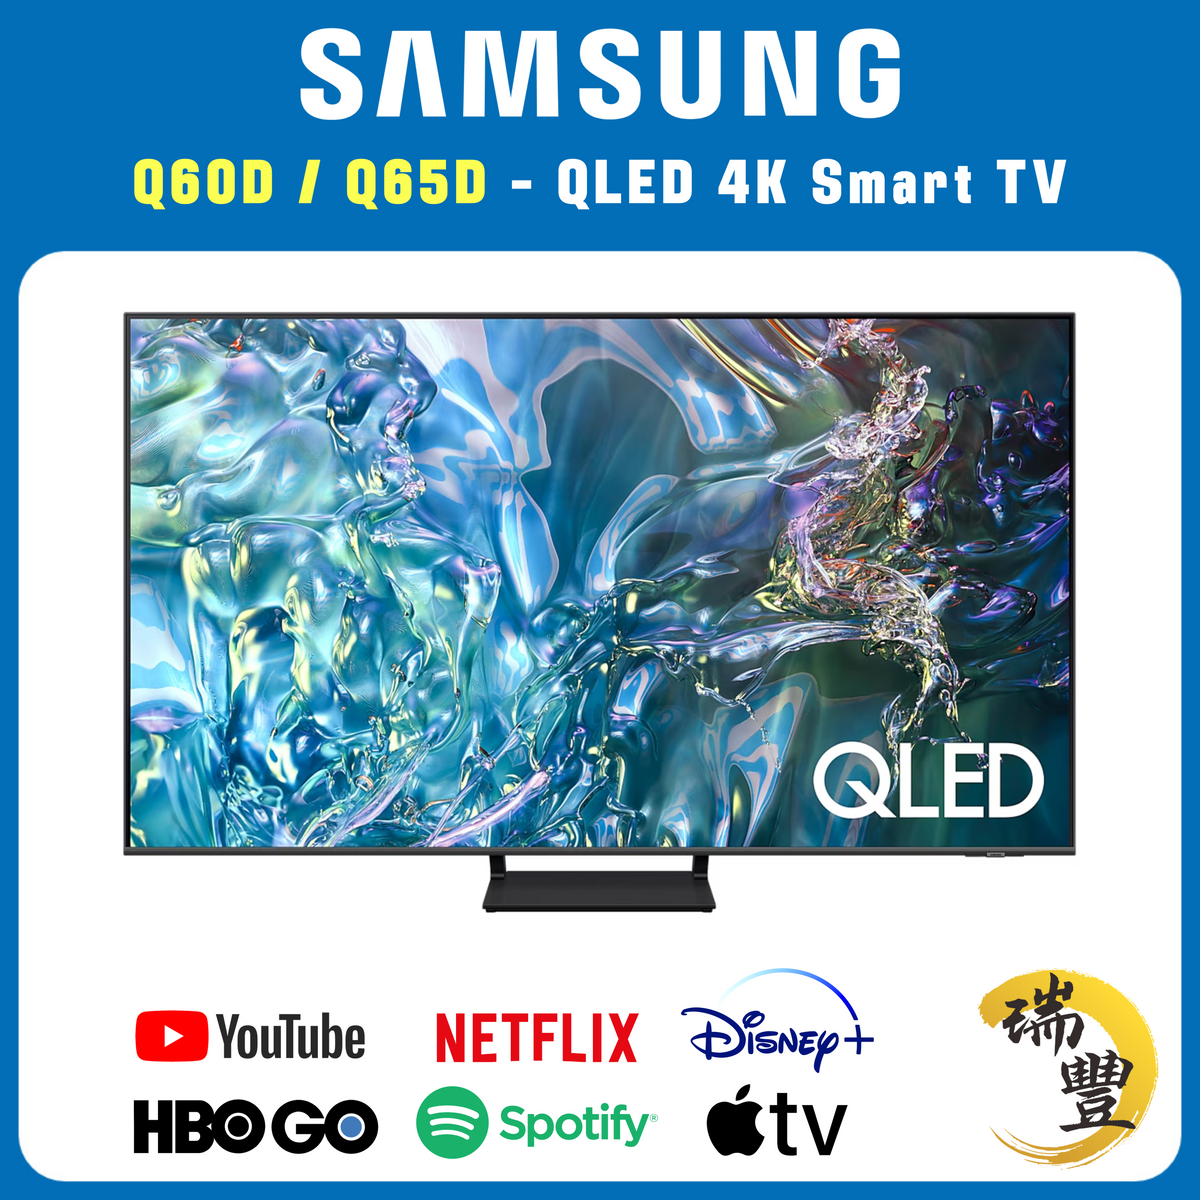 SAMSUNG三星 QLED系列 85吋 Q60D/Q65D 4K超高清智能電視[瑞豐1年保養][保證全新機][隨機發貨]